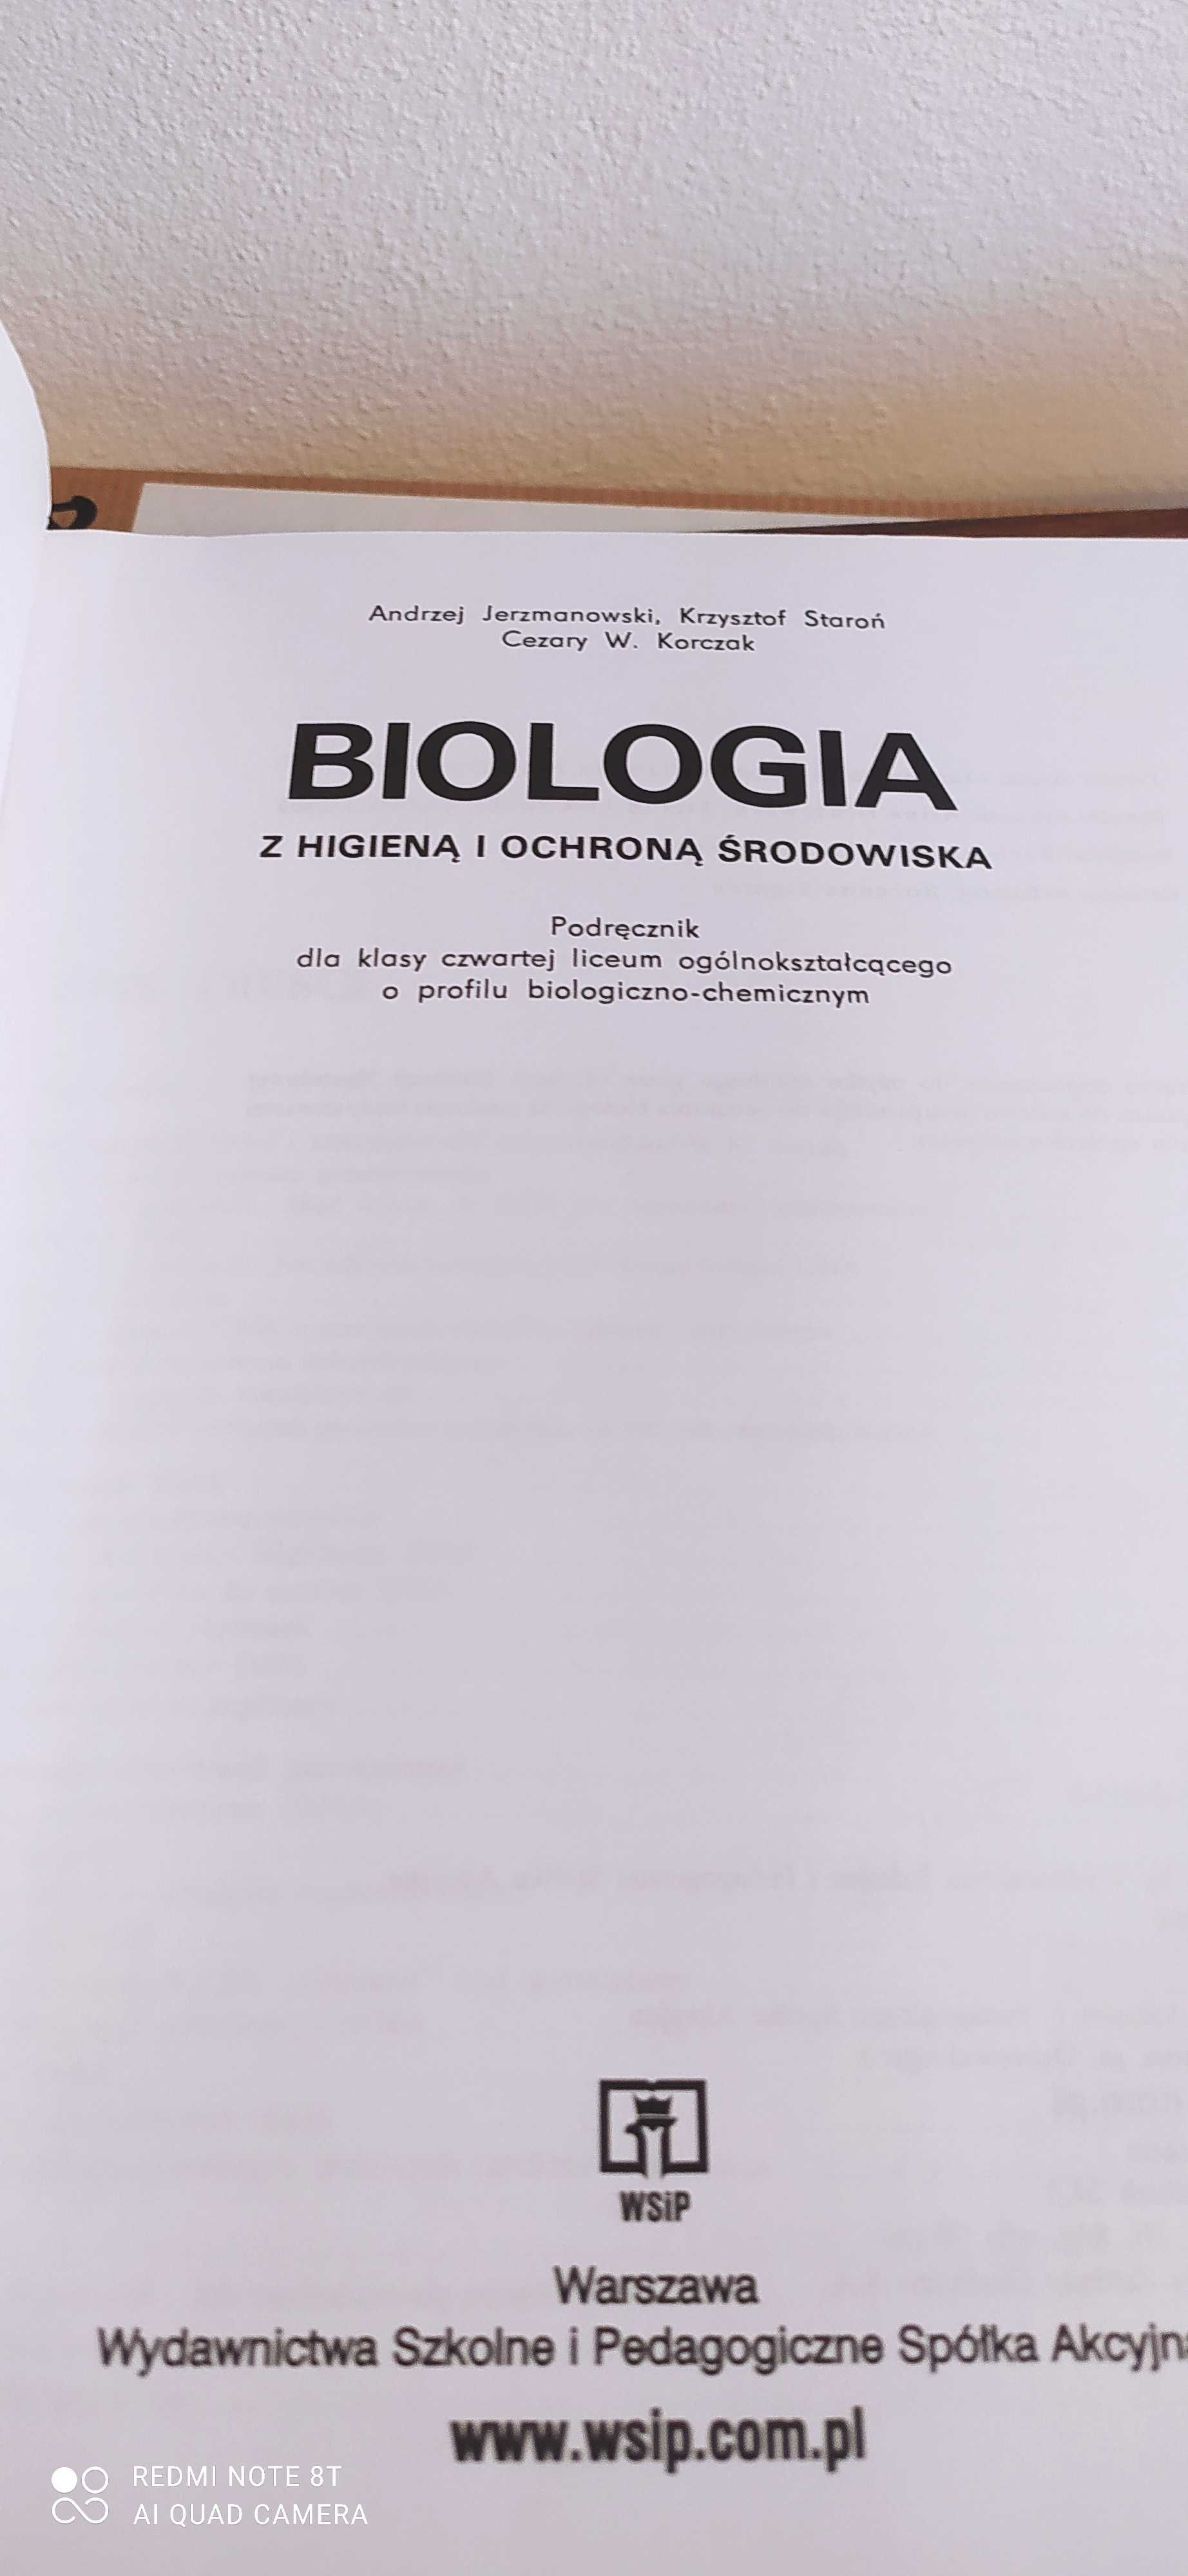 Podręcznik Biologia dla klasy 4 liceum ogólnokształcącego WSIP